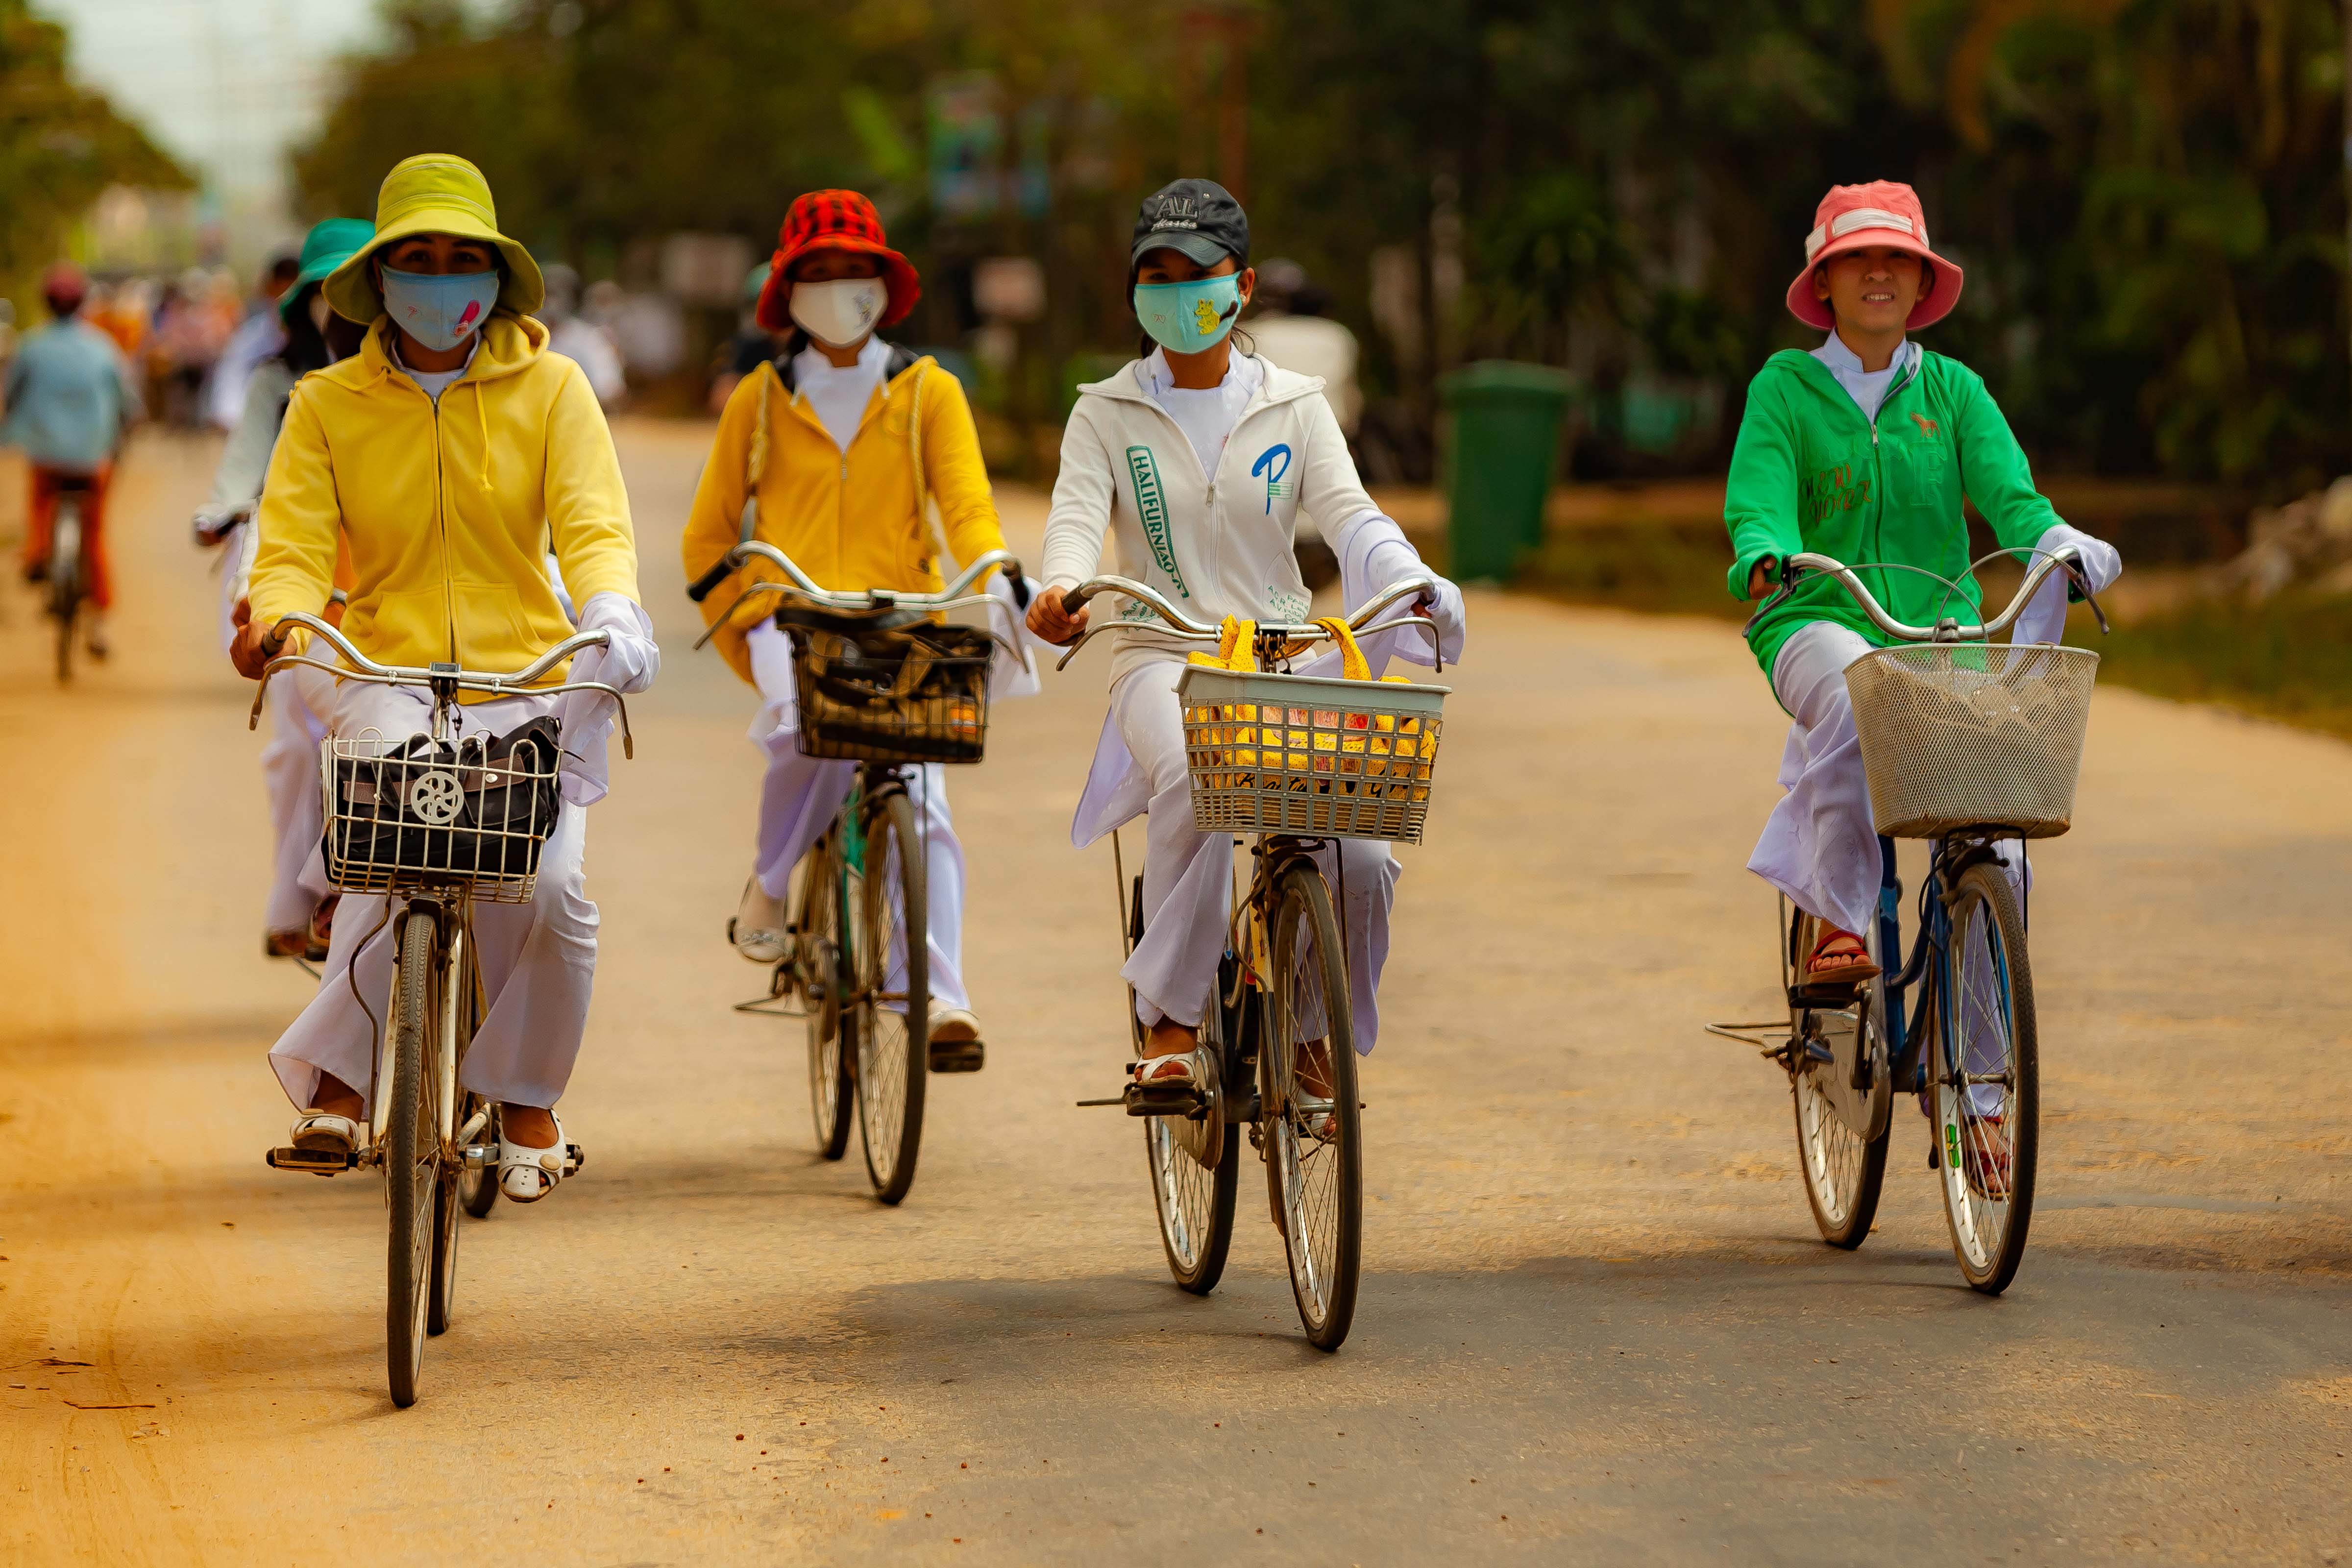 Vietnam, Quang Ngai Prov, Women On Bicycles, 2010, IMG 2578